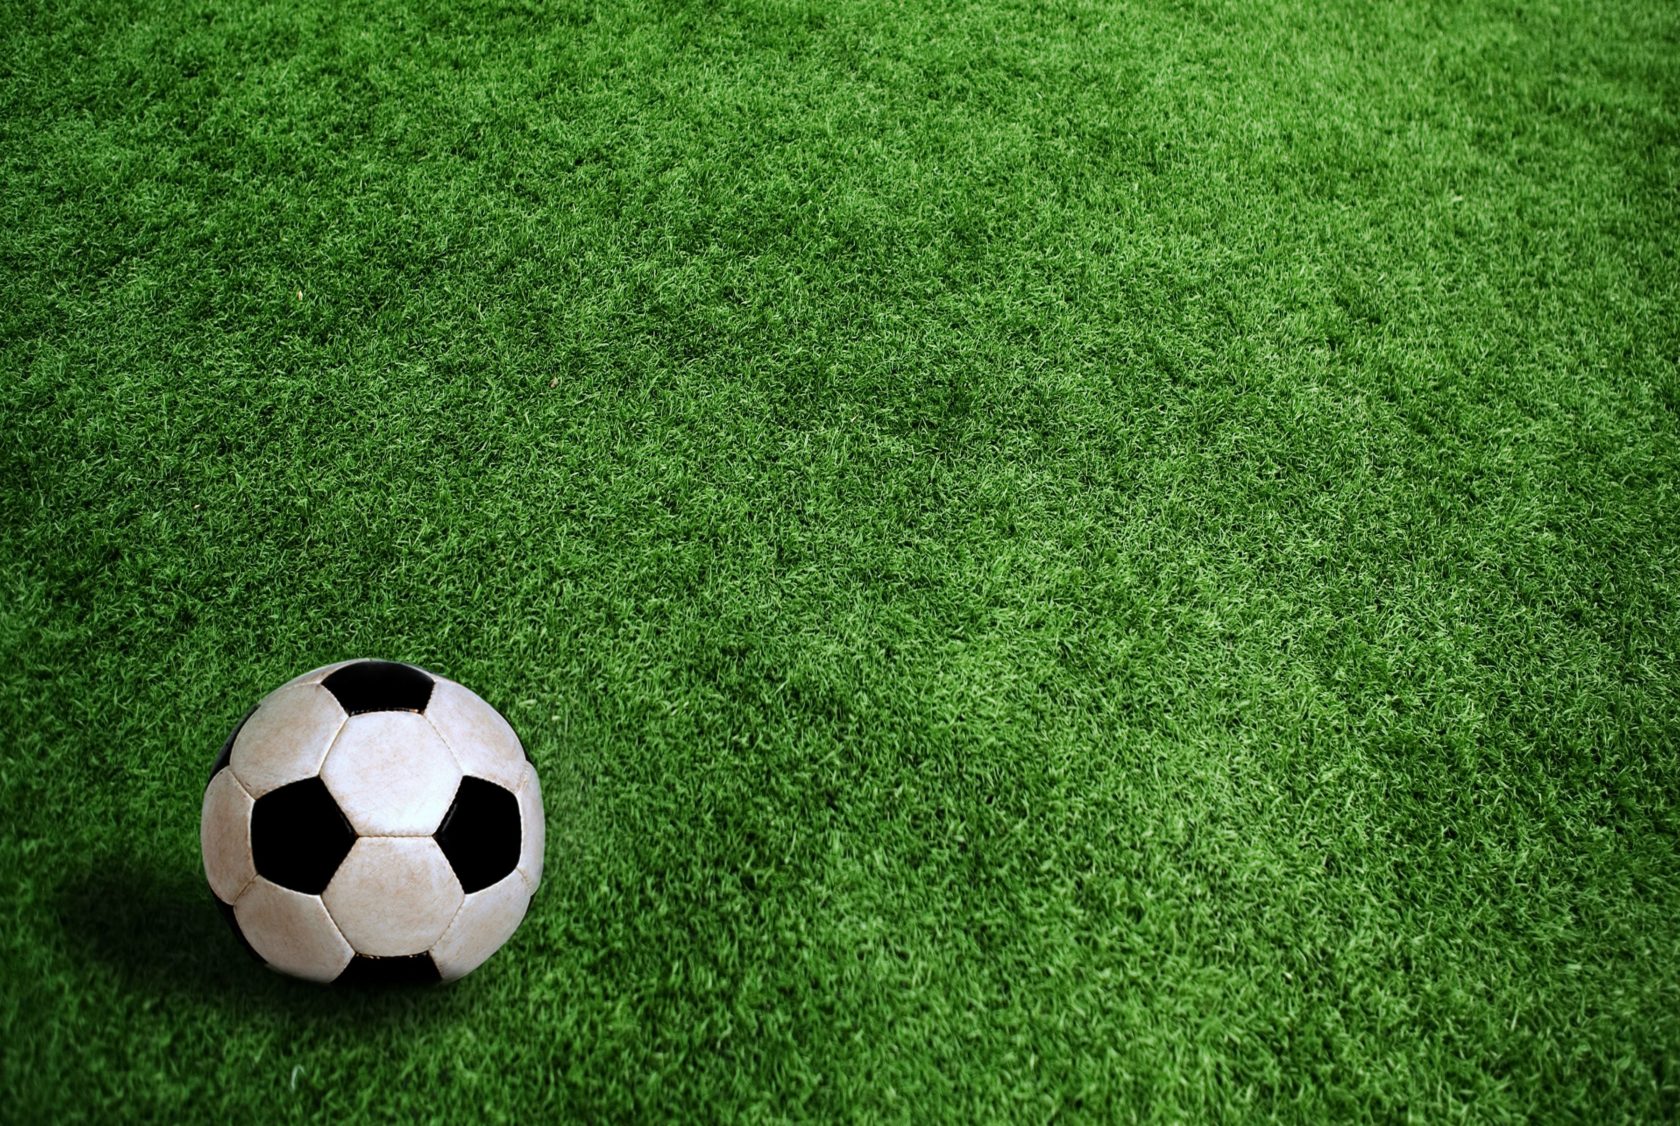 Campeonato Municipal de Futebol retorna neste domingo (7) em Itararé (SP)